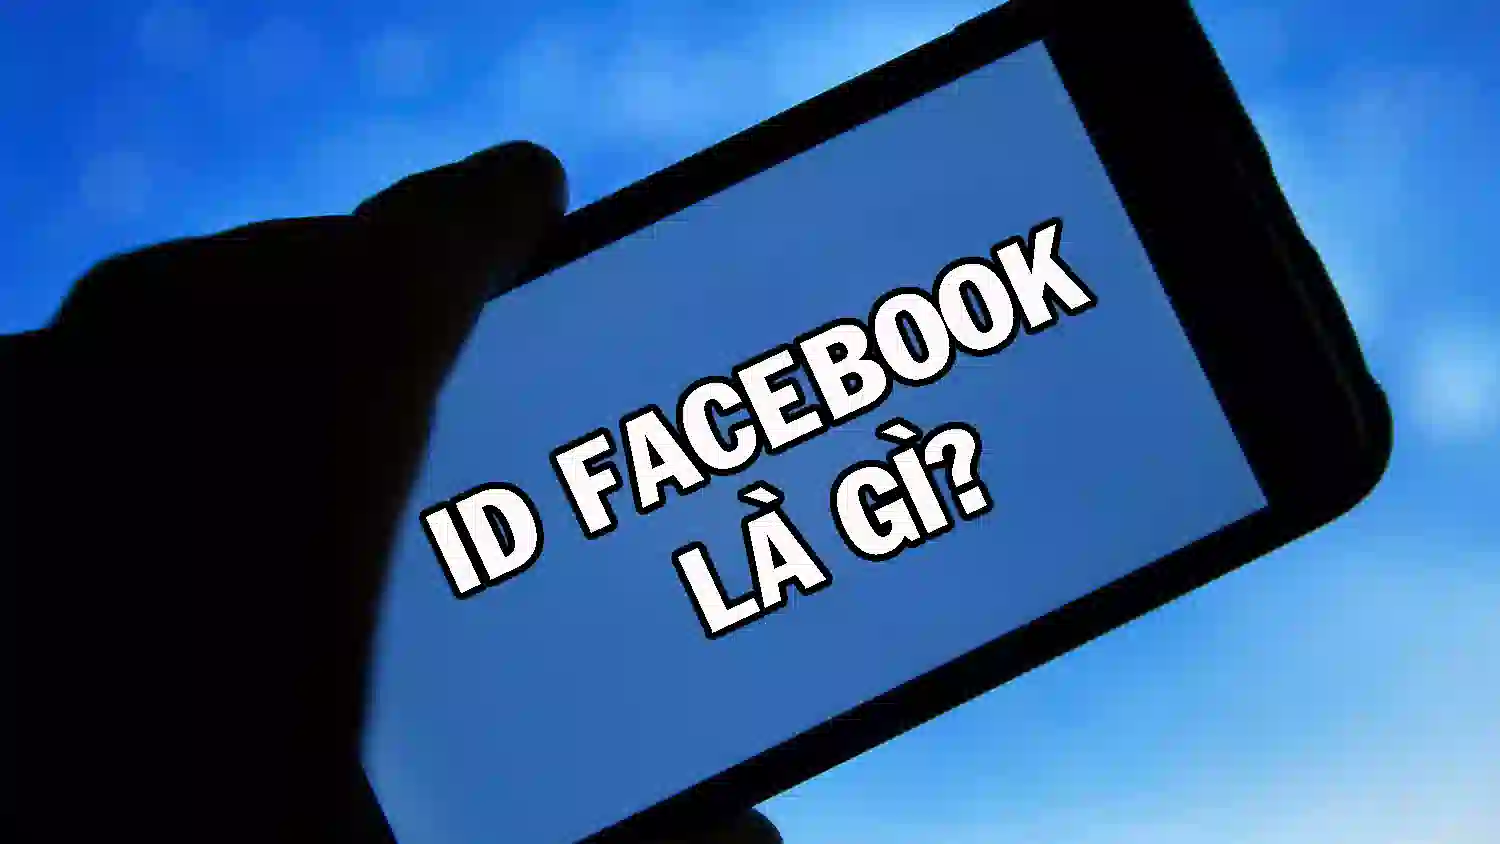 ID Page Facebook là gì? Hướng dẫn 2 cách lấy ID Page Facebook đơn giản